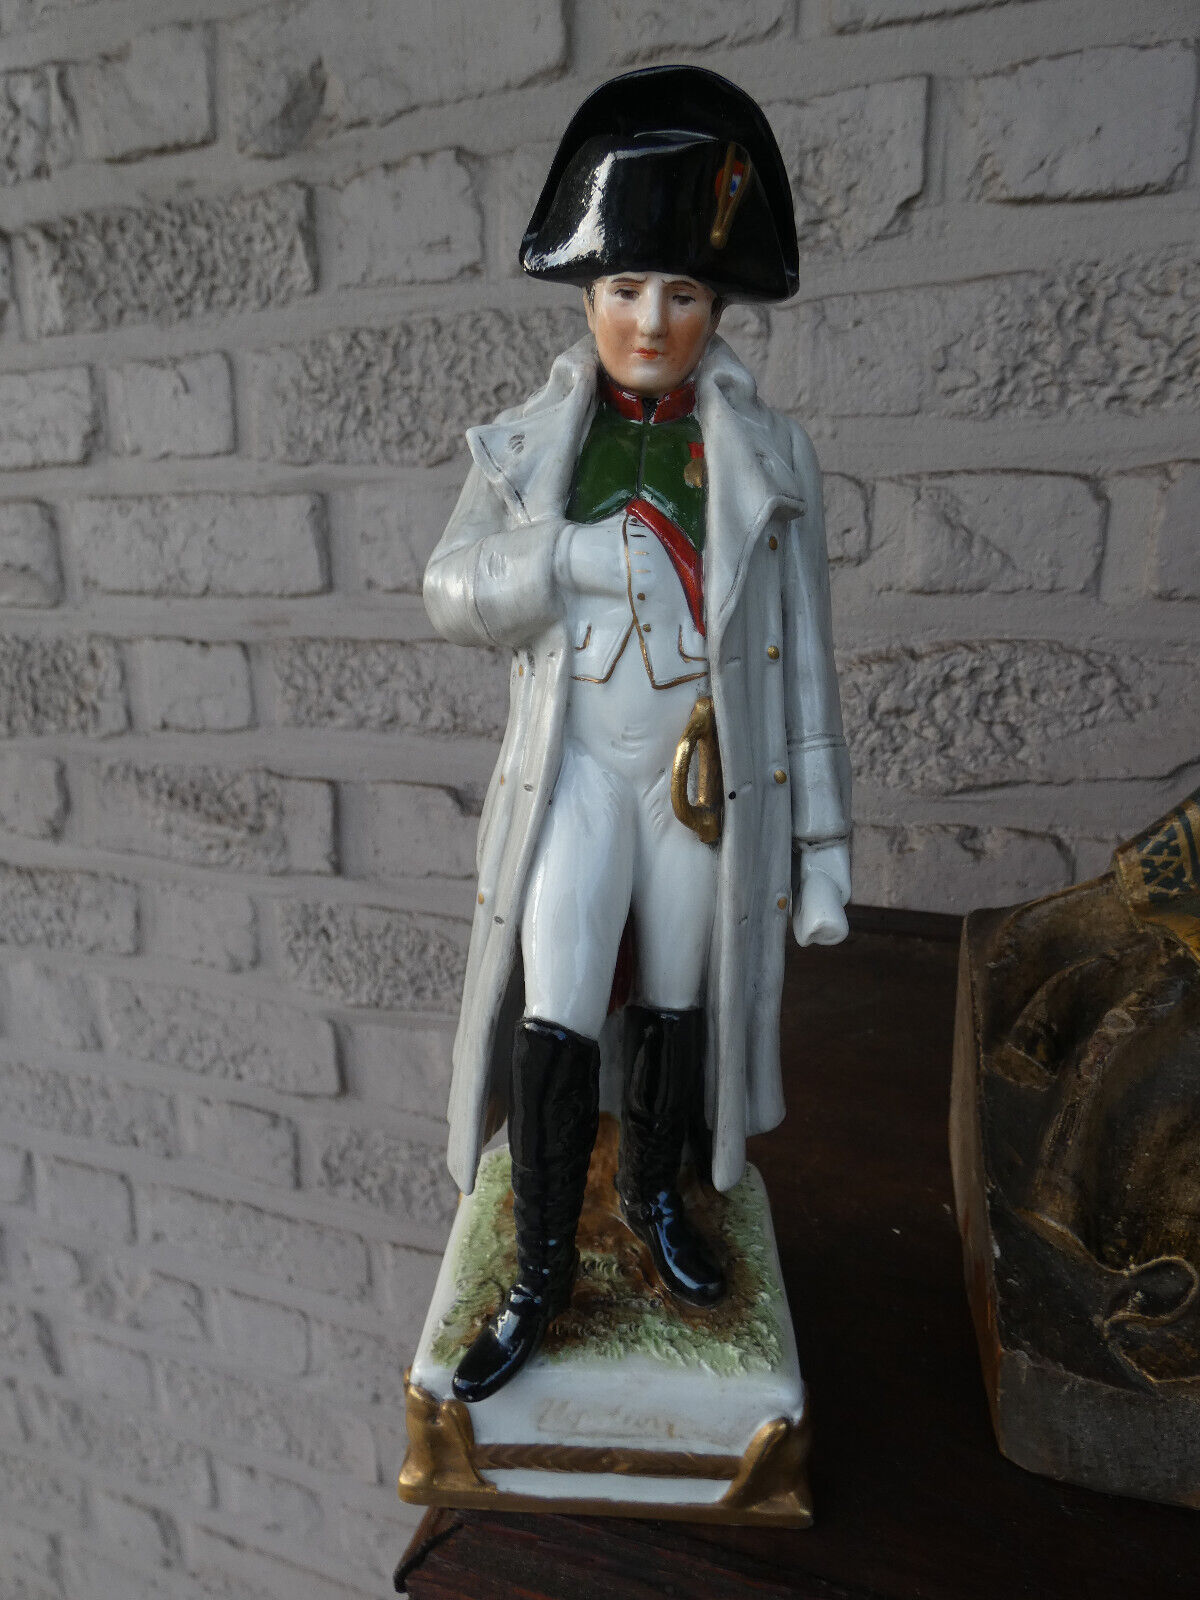 Scheibe alsbach marked porcelain German napoleon figurine statue